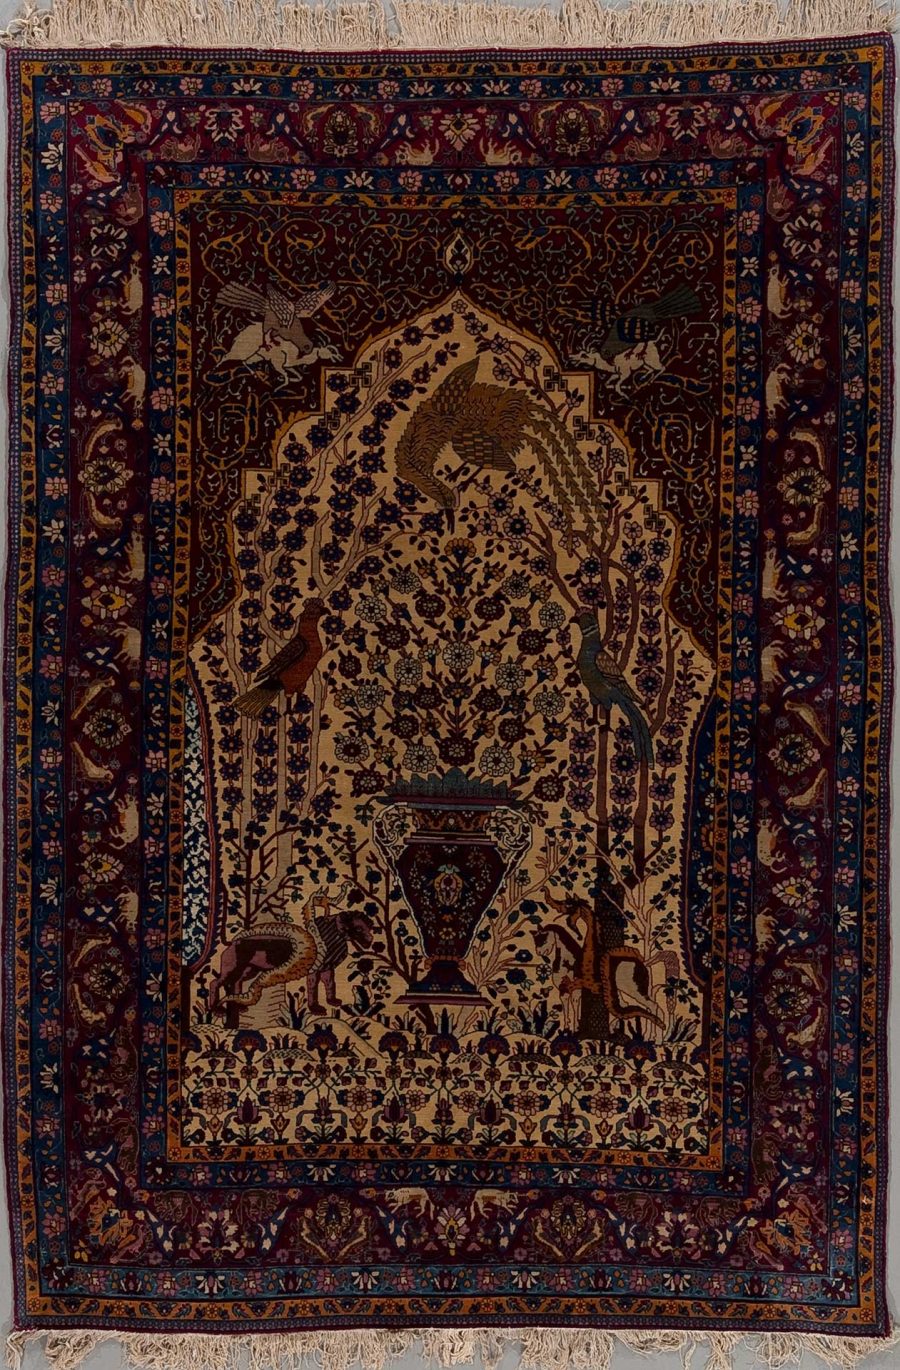 Traditioneller persischer Teppich mit aufwendigem Design, einschließlich floralem Muster und Tierdarstellungen, umgeben von einer dekorativen Bordüre.